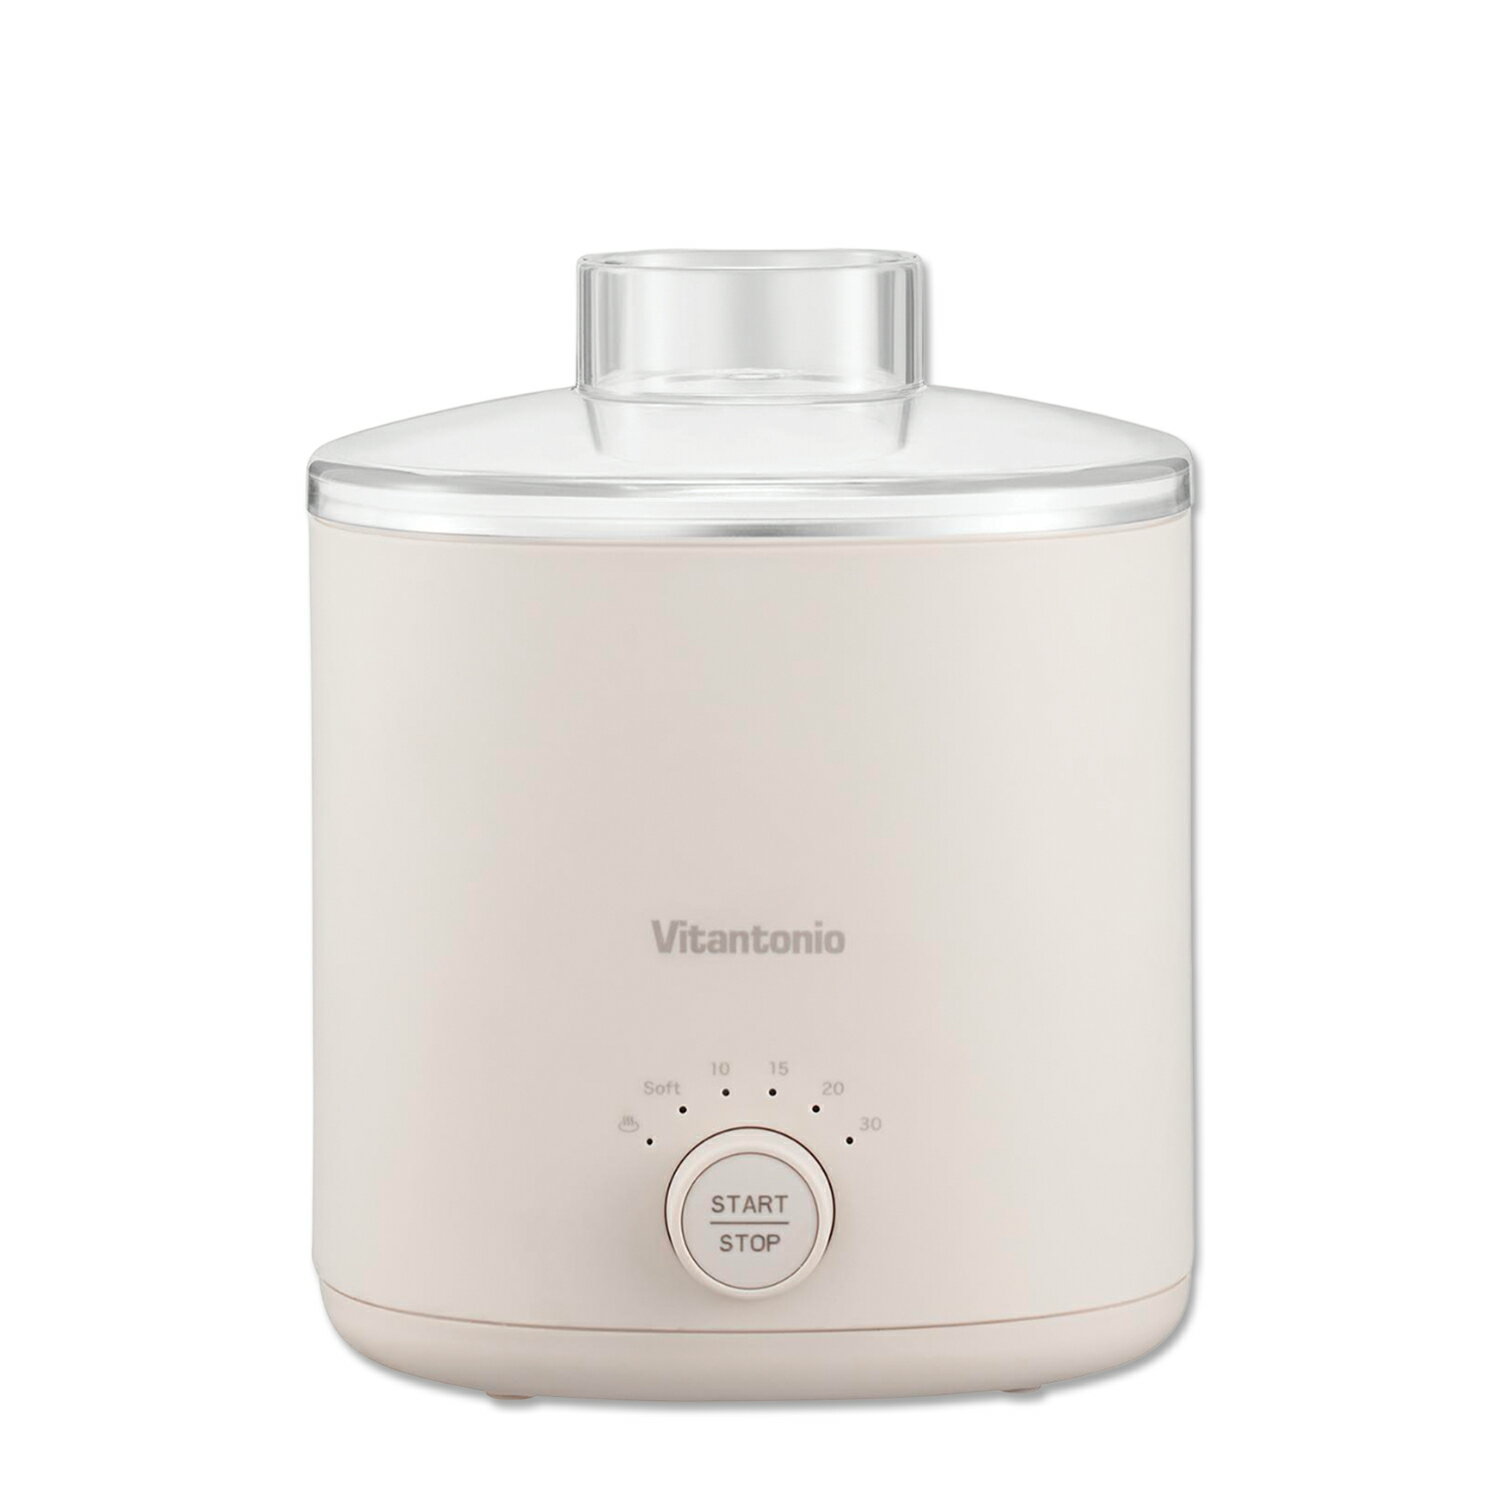 Vitantonio FOOD STEAMER ビタントニオ 電気蒸し器 フードスチーマー せいろ コンパクト 小さい 簡単 操作 VFS-10